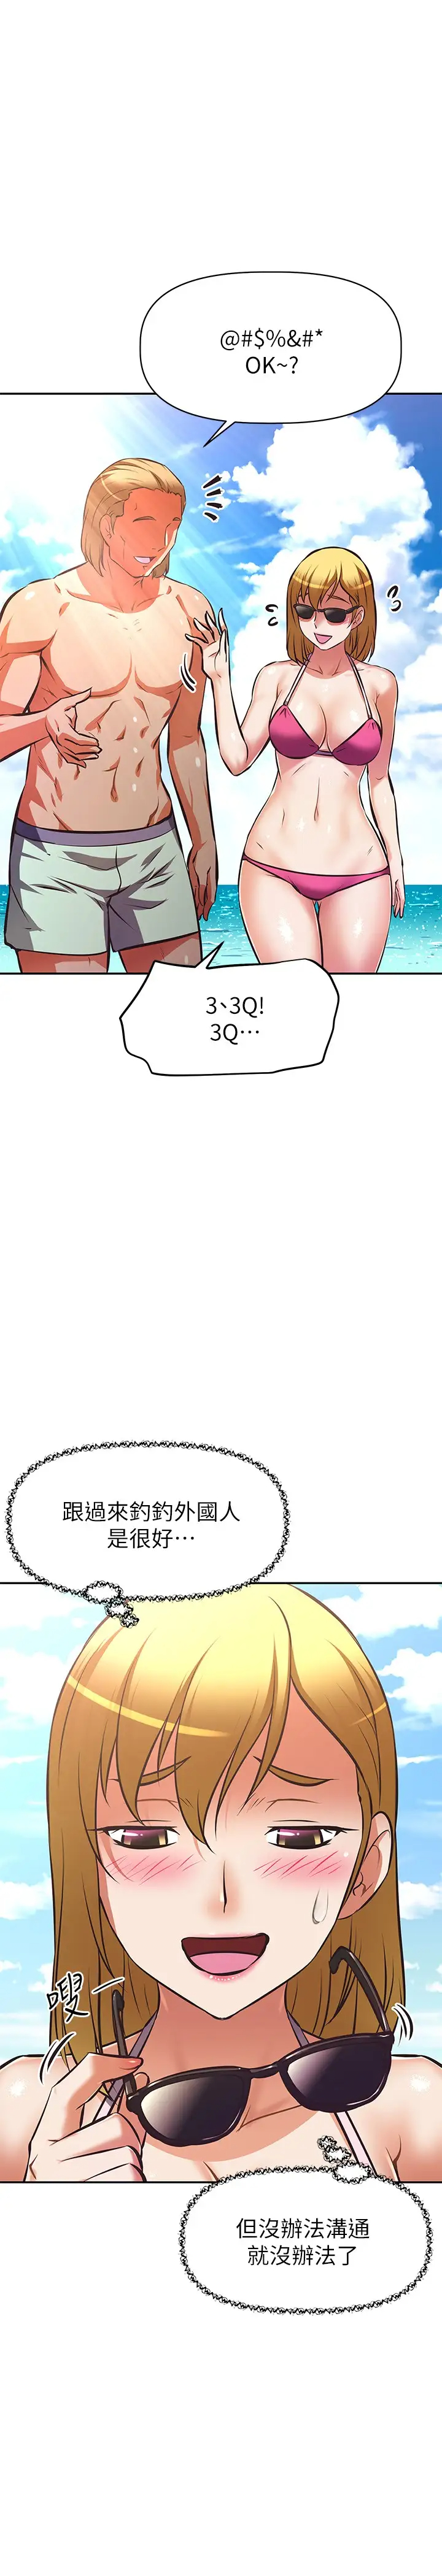 韩国污漫画 阿姨不可以壞壞 第30话以后也继续爱我 15